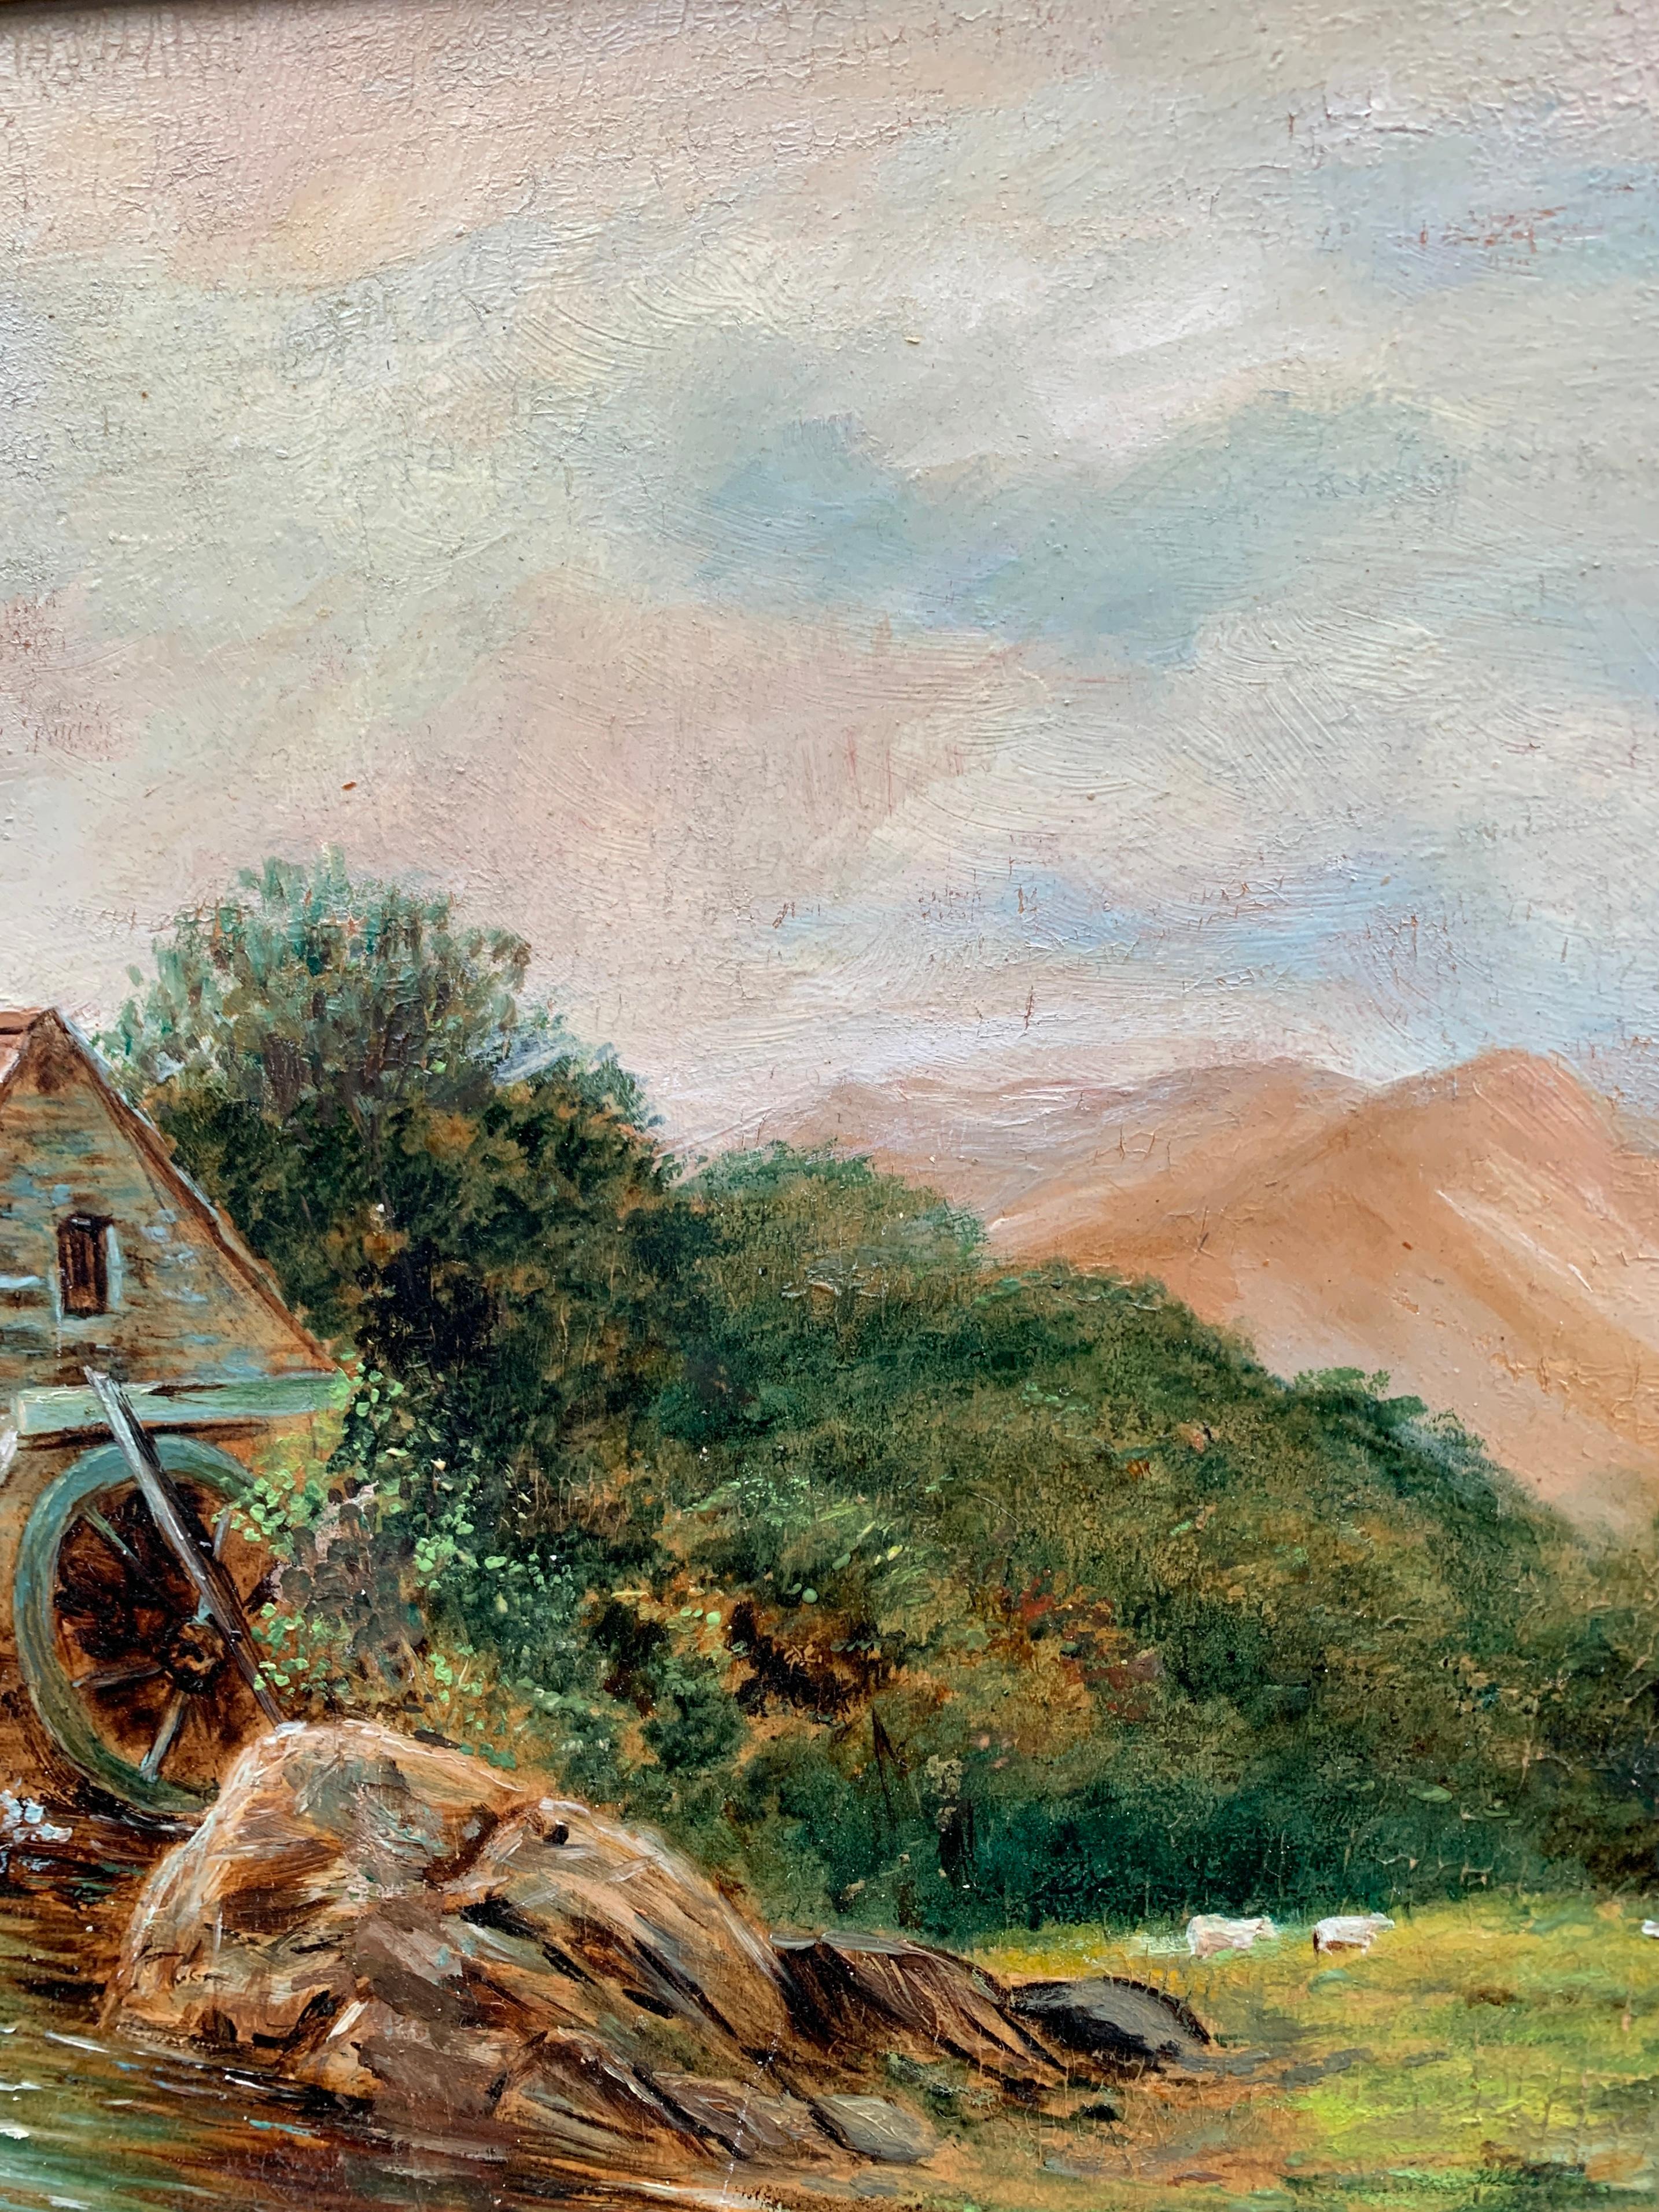 R. Ellis

Englische Landschaft des späten 19. Jahrhunderts mit einer Wassermühle an einem Bach

Original-Rahmen

Öle auf Karte

Signiert und datiert auf der Rückseite und unten rechts. 

Ellis war ein Landschaftsmaler, der in der zweiten Hälfte des